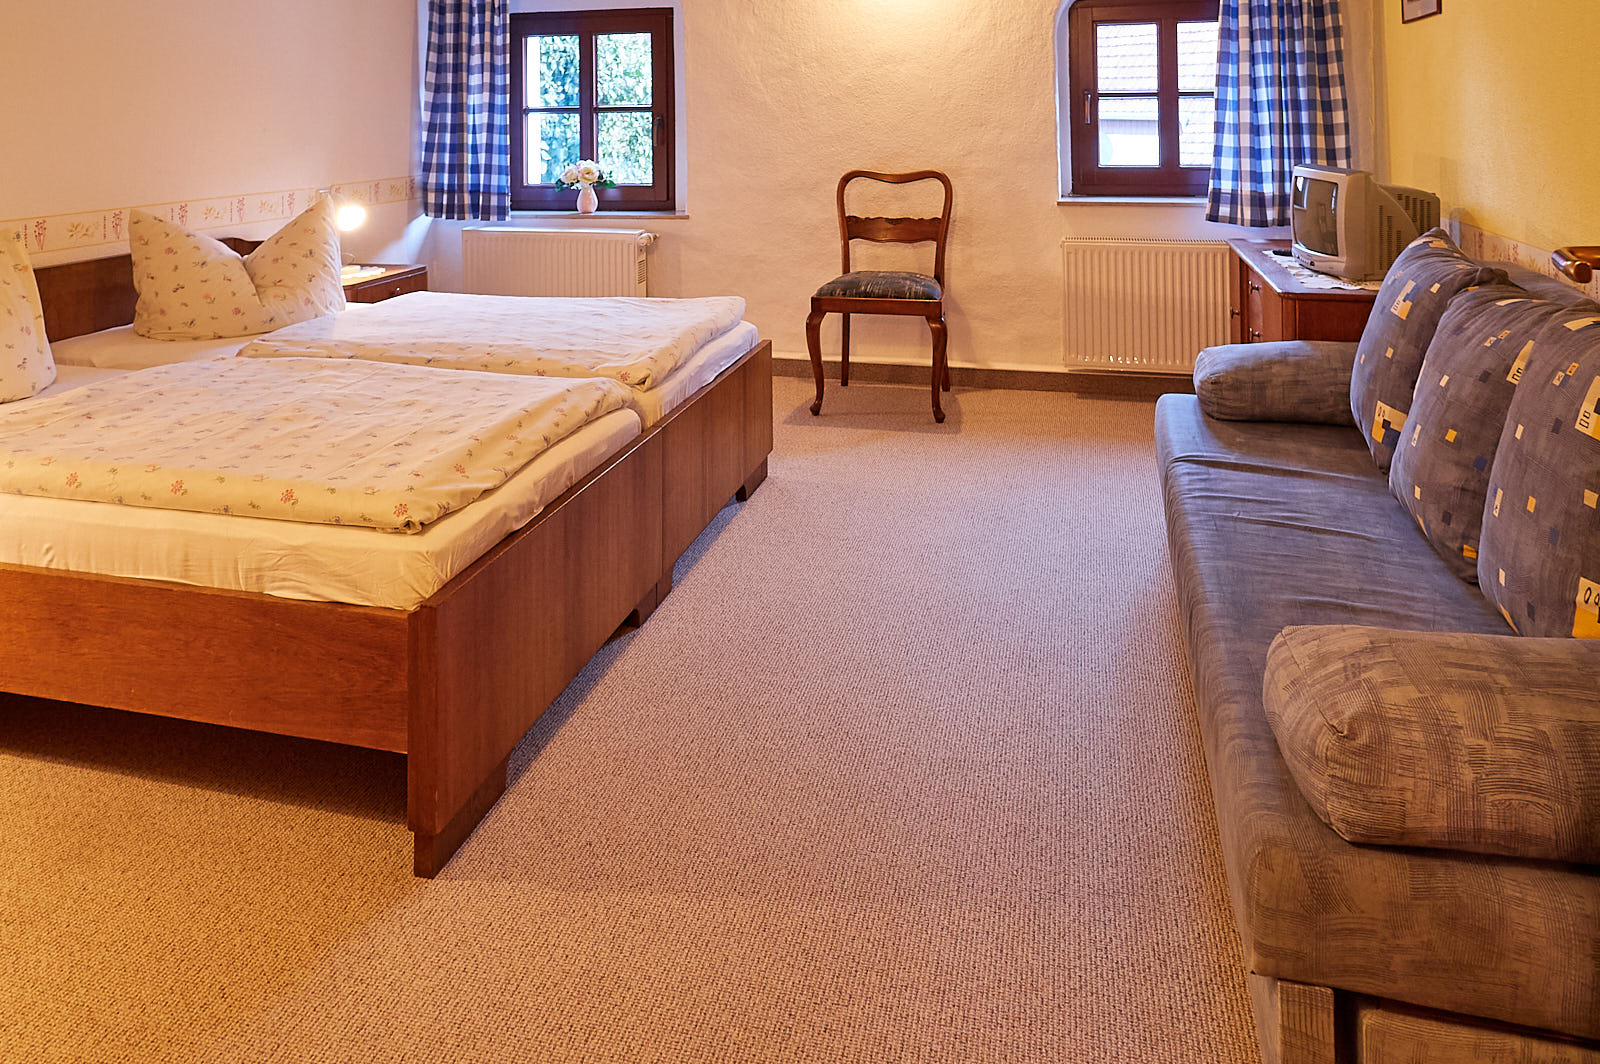 Ferienwohnung 4 – 5 Personen: Schlafzimmer mit Doppelbett und Schlafliege